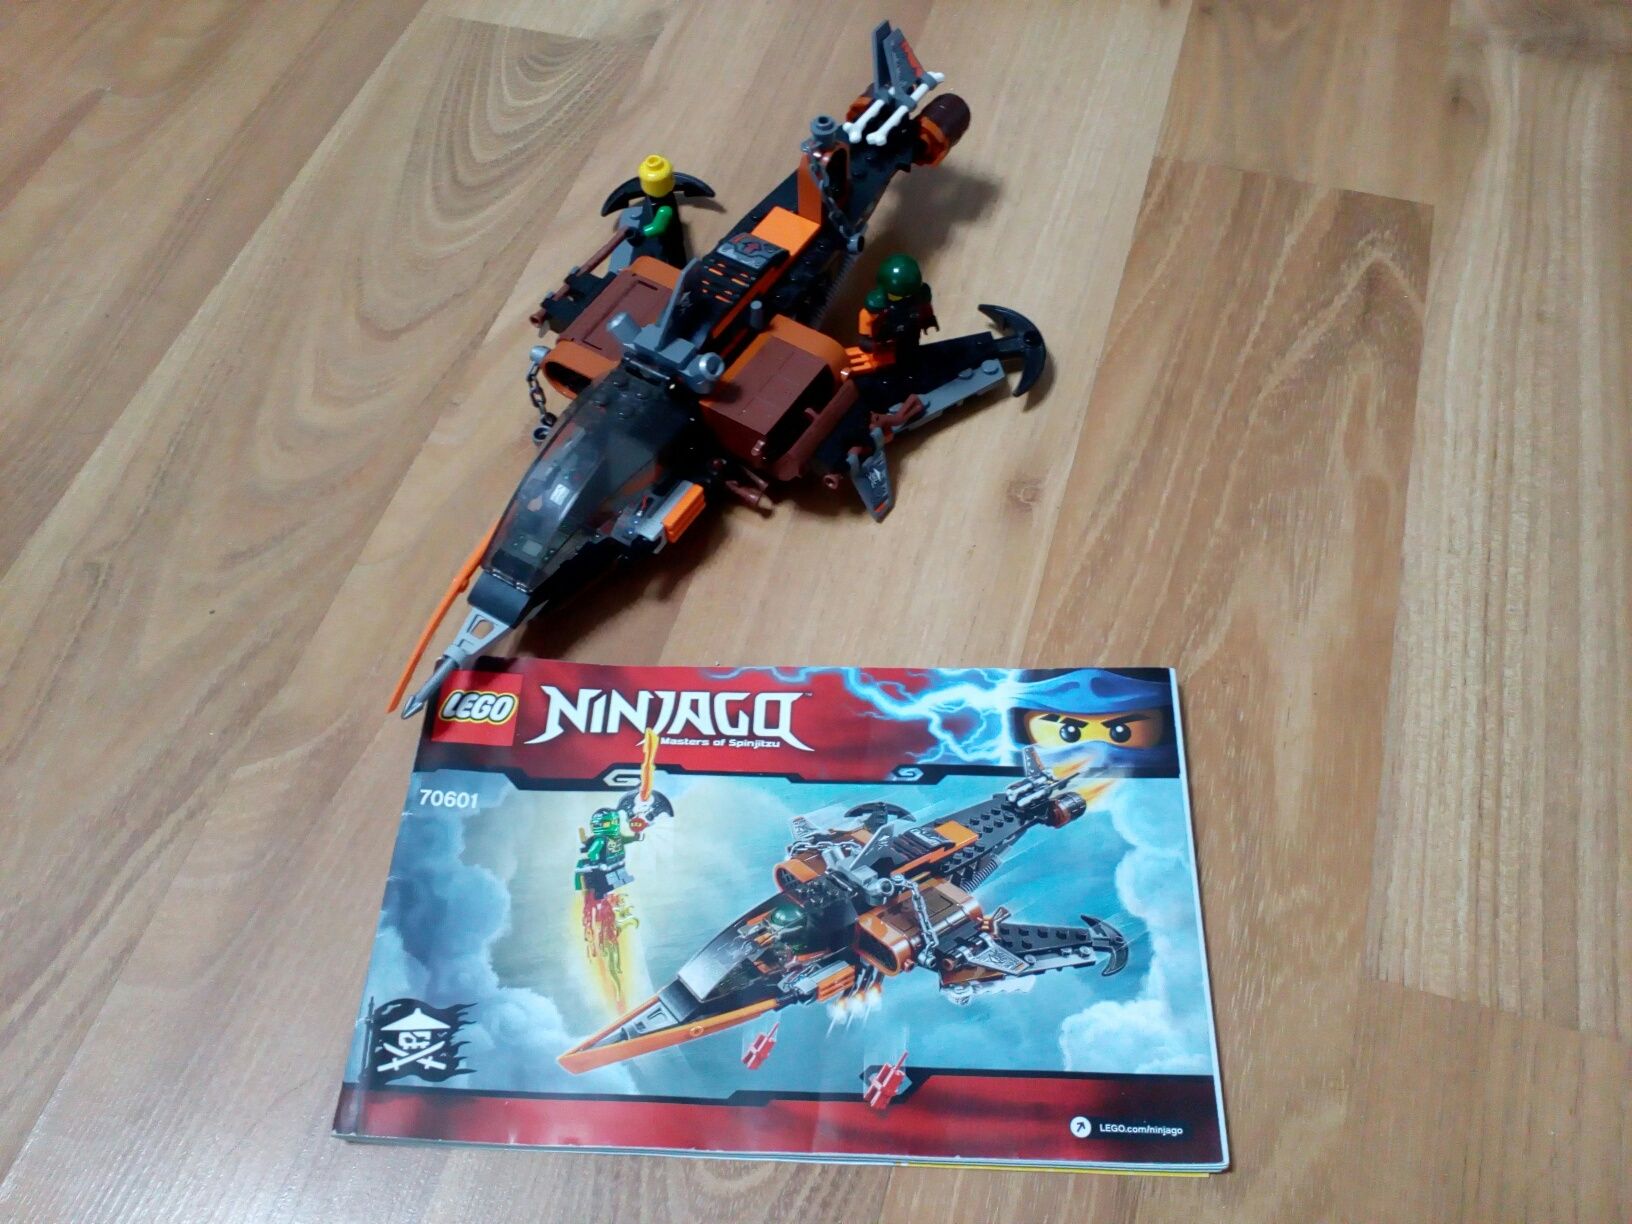 Lego ninjago 70601 lego